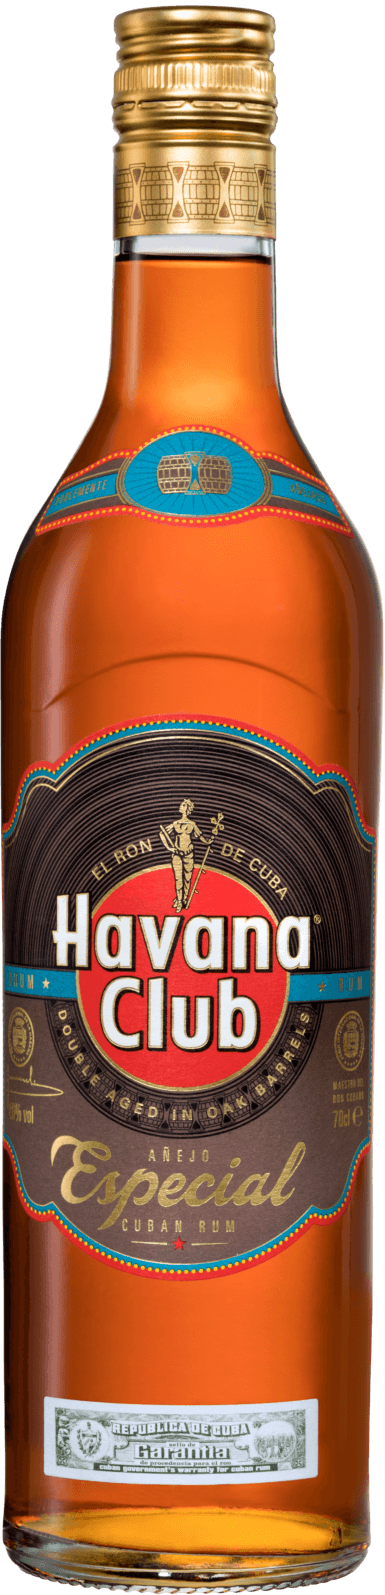 Havana Havana Especial | Club Golden rum Club